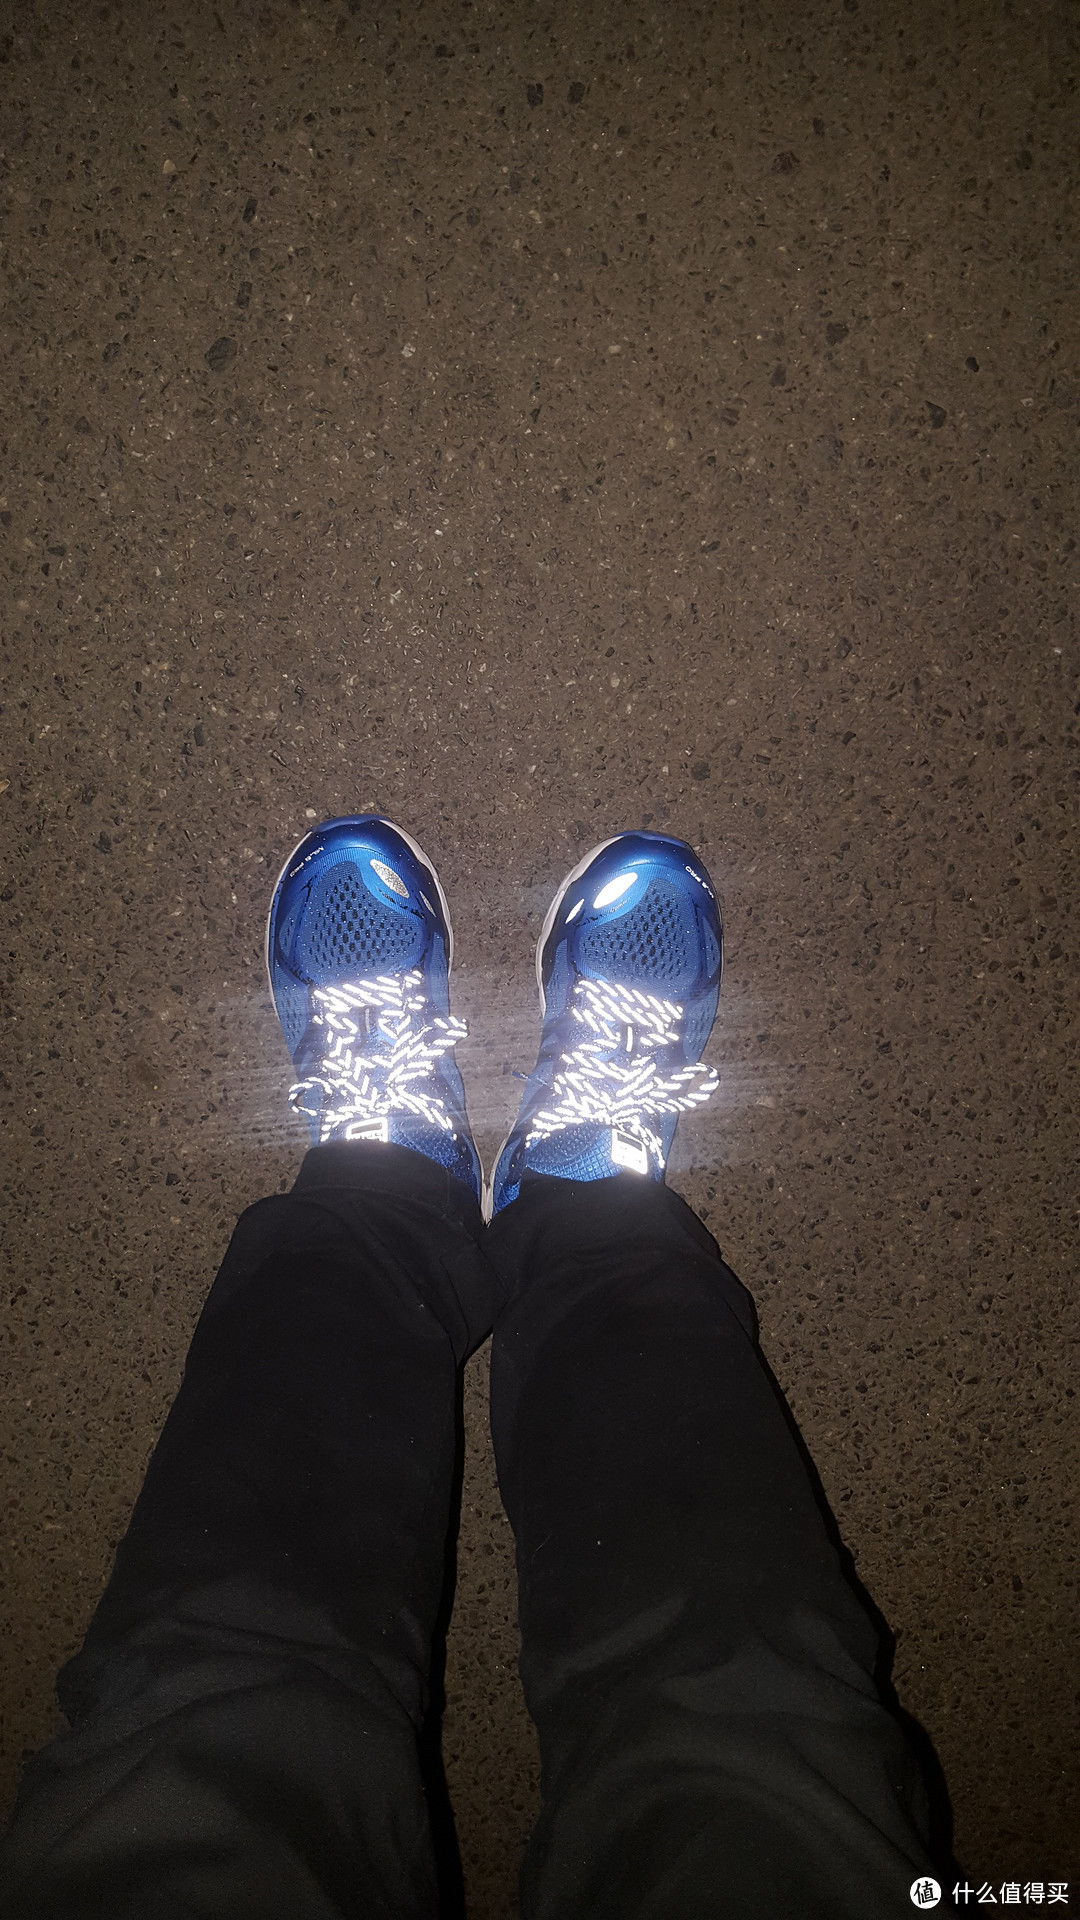 我的第二双国产跑鞋-必迈 Mile 42k马拉松专业公路跑步鞋上脚简测